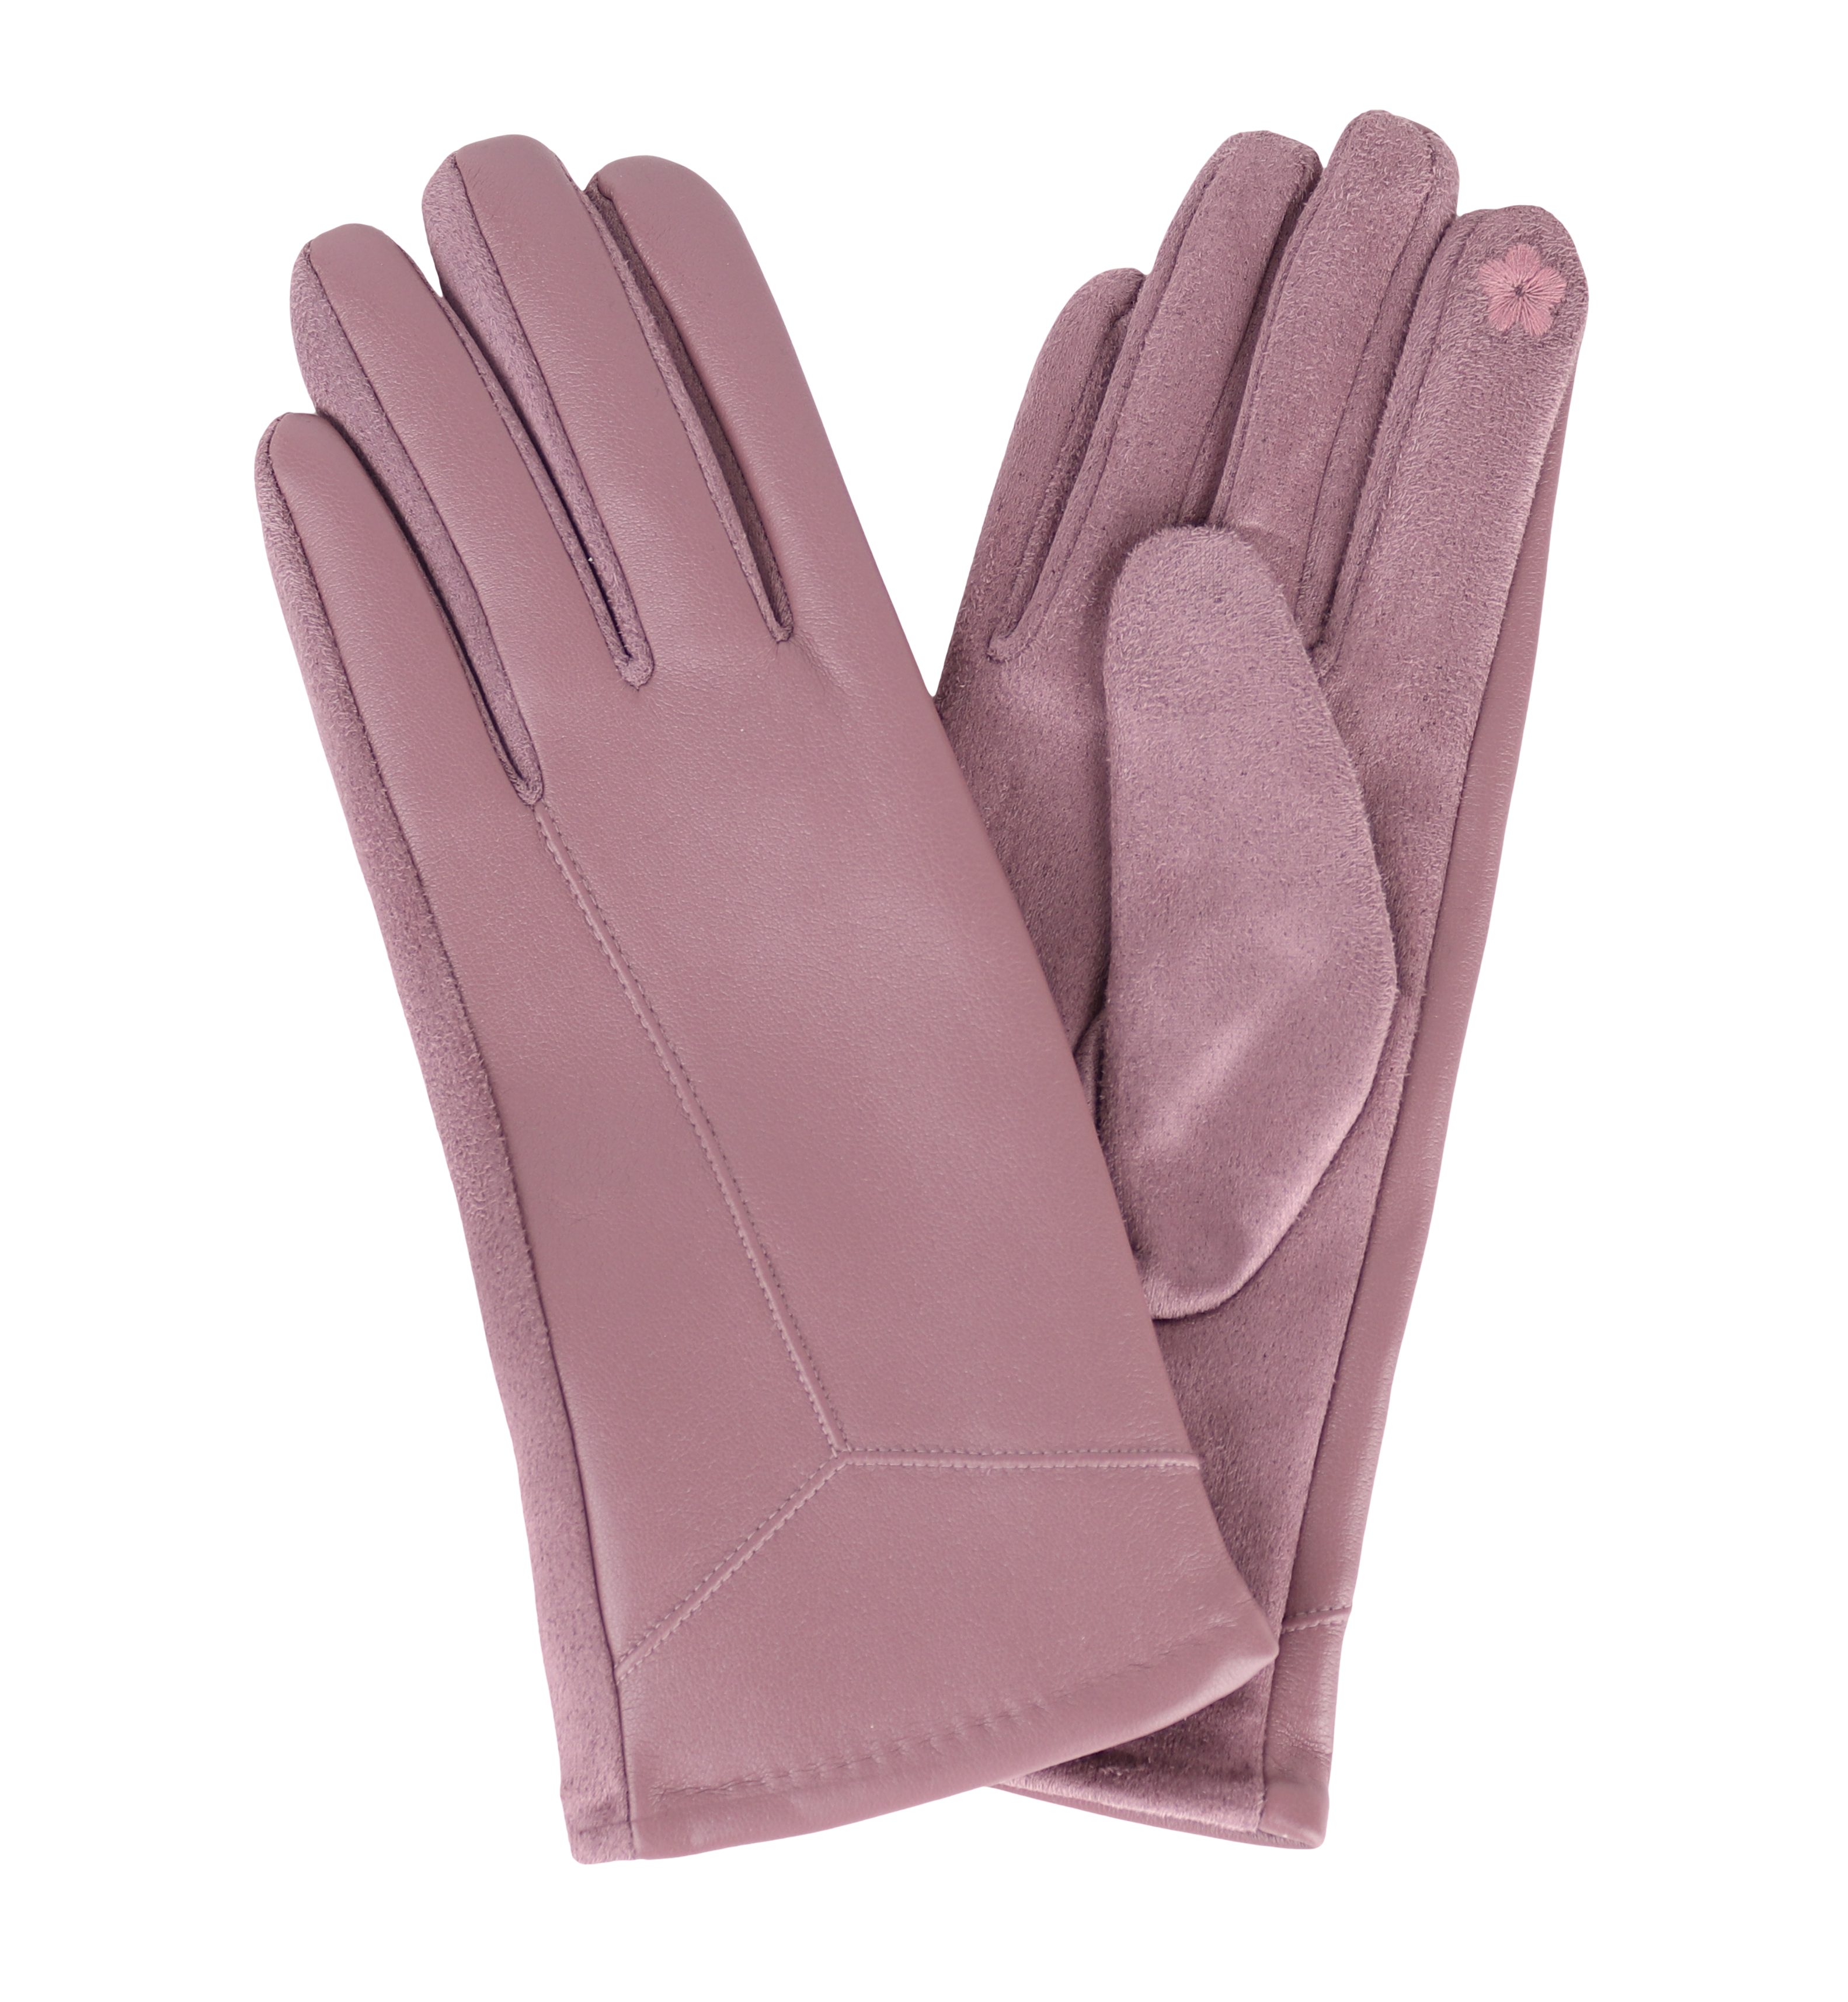 MIRROSI Lederhandschuhe Damen Touchscreen Handschuhe gefüttert Warm ONESIZE aus Veganleder sehr weich und warm ideal für Herbst oder Winter Altrosa